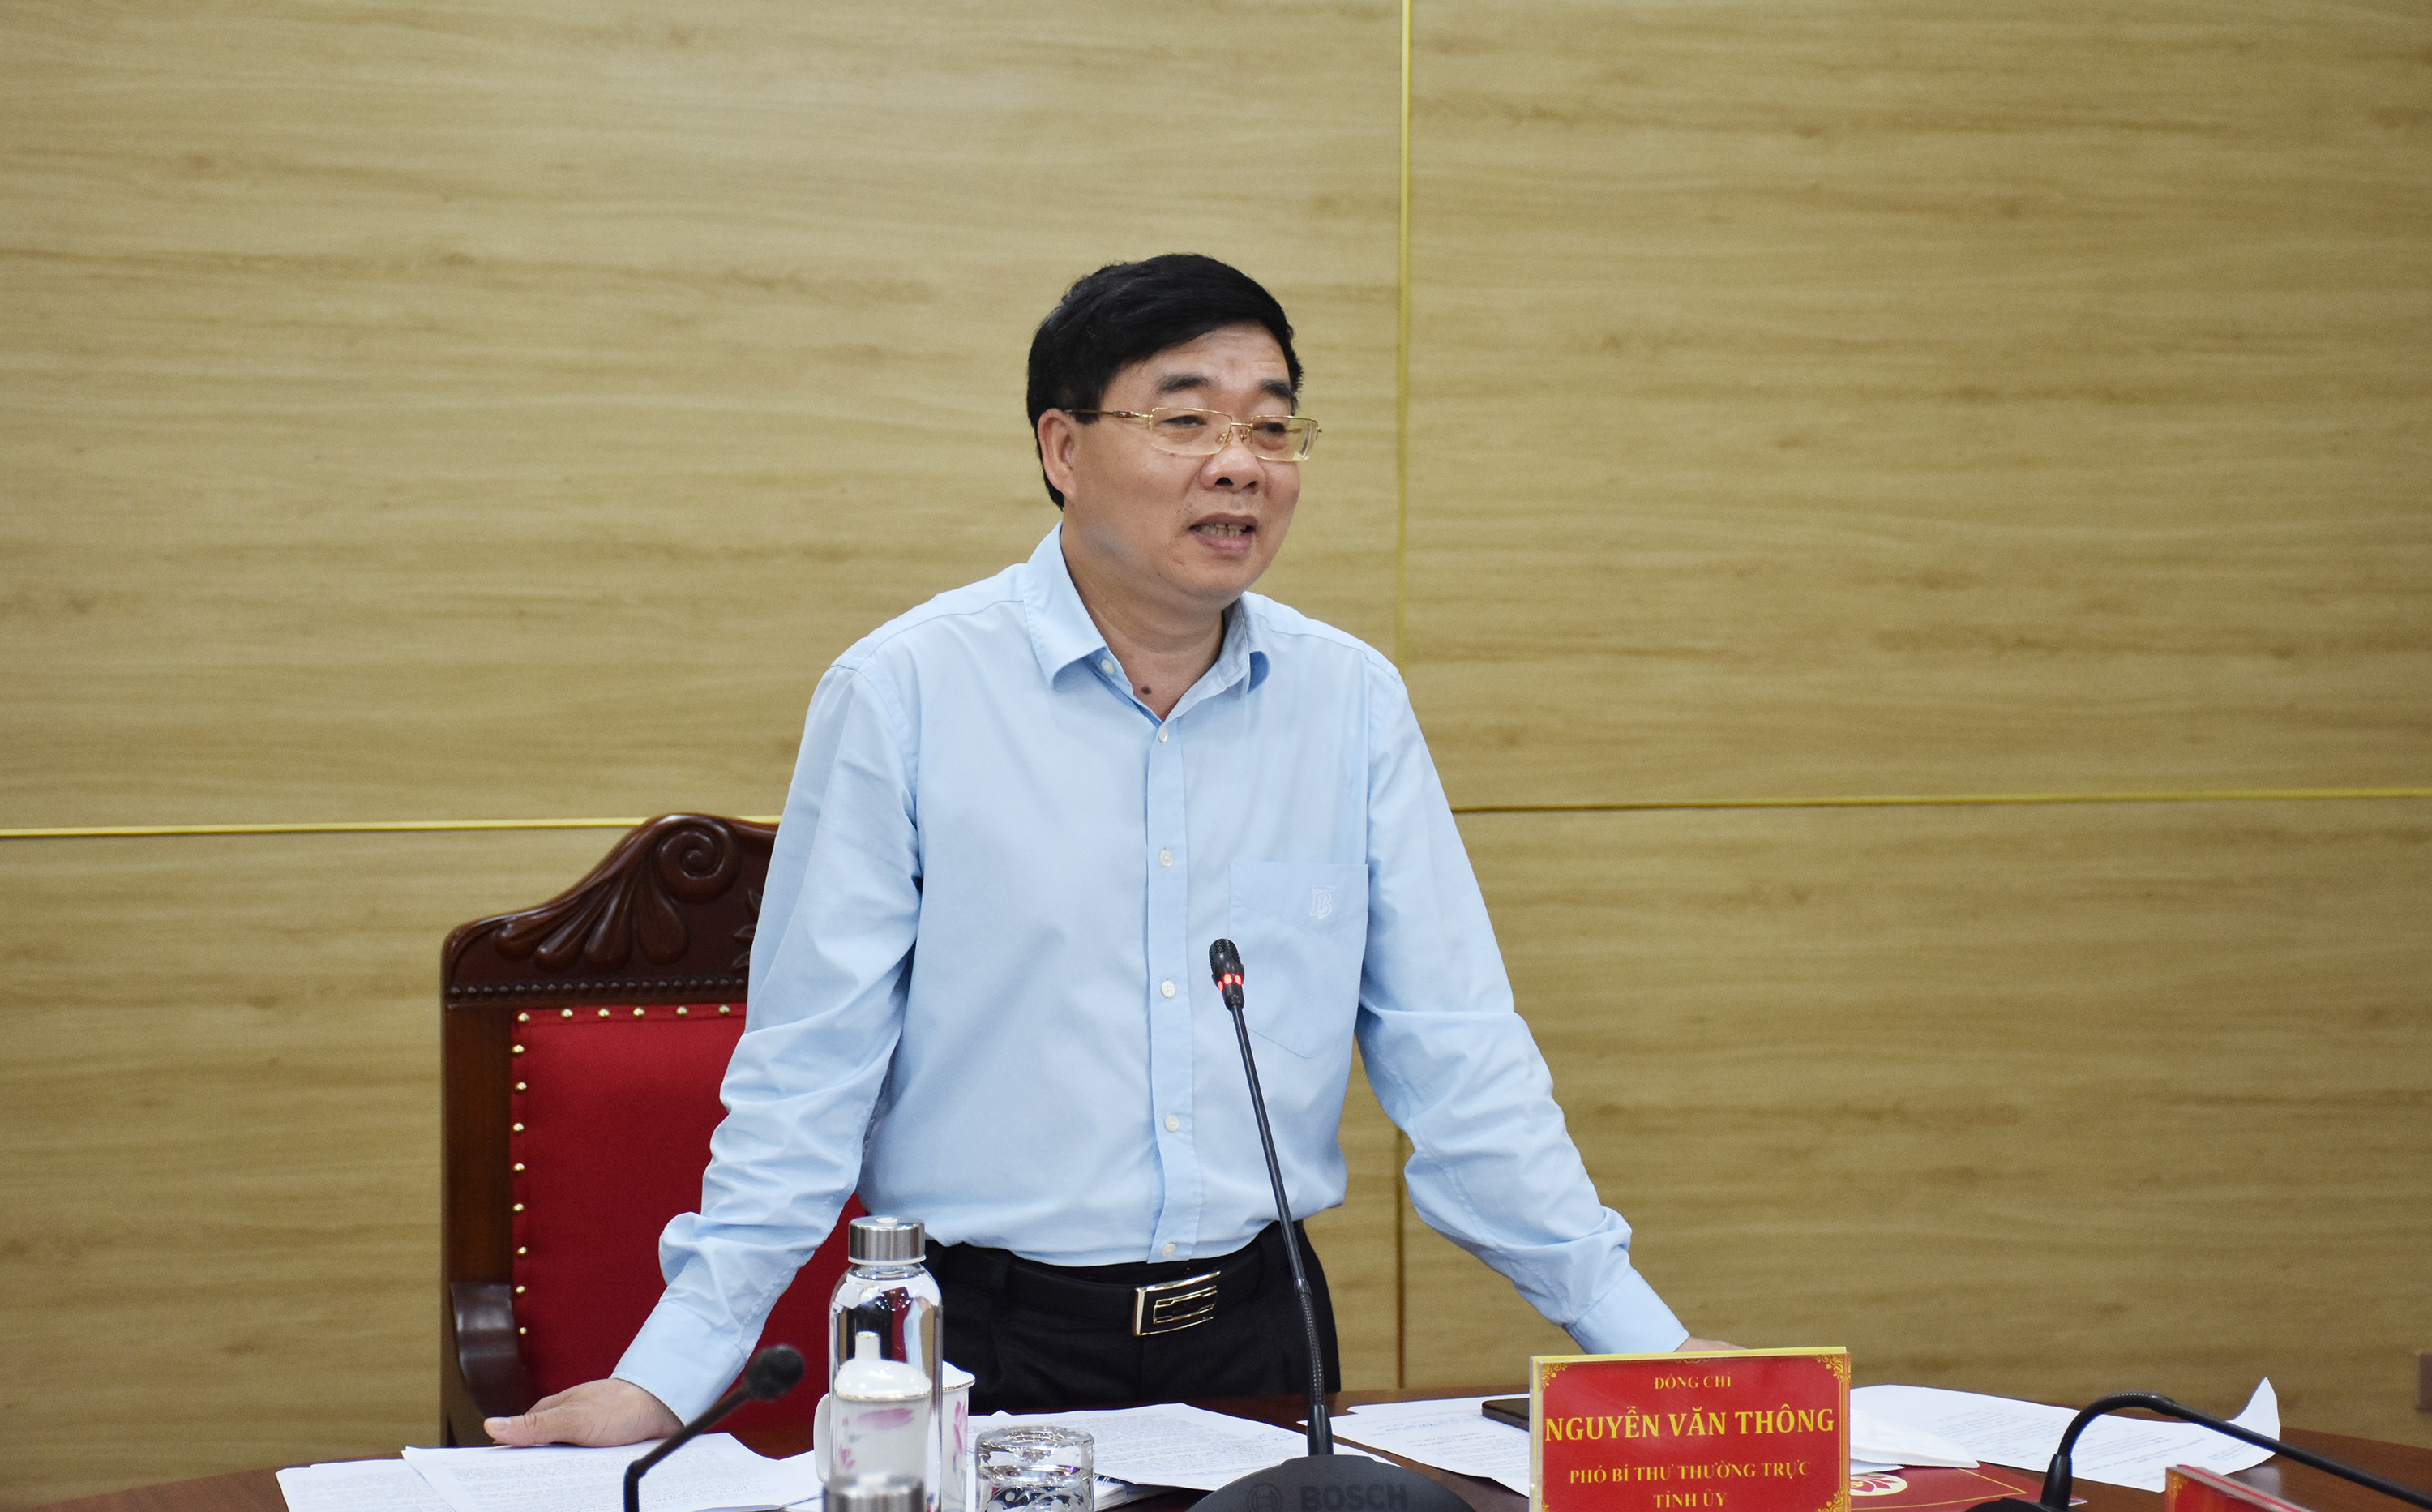 Đồng chí Nguyễn Văn Thông - Phó Bí thư Thường trực Tỉnh ủy kết luận hội nghị. Ảnh: Thanh Lê